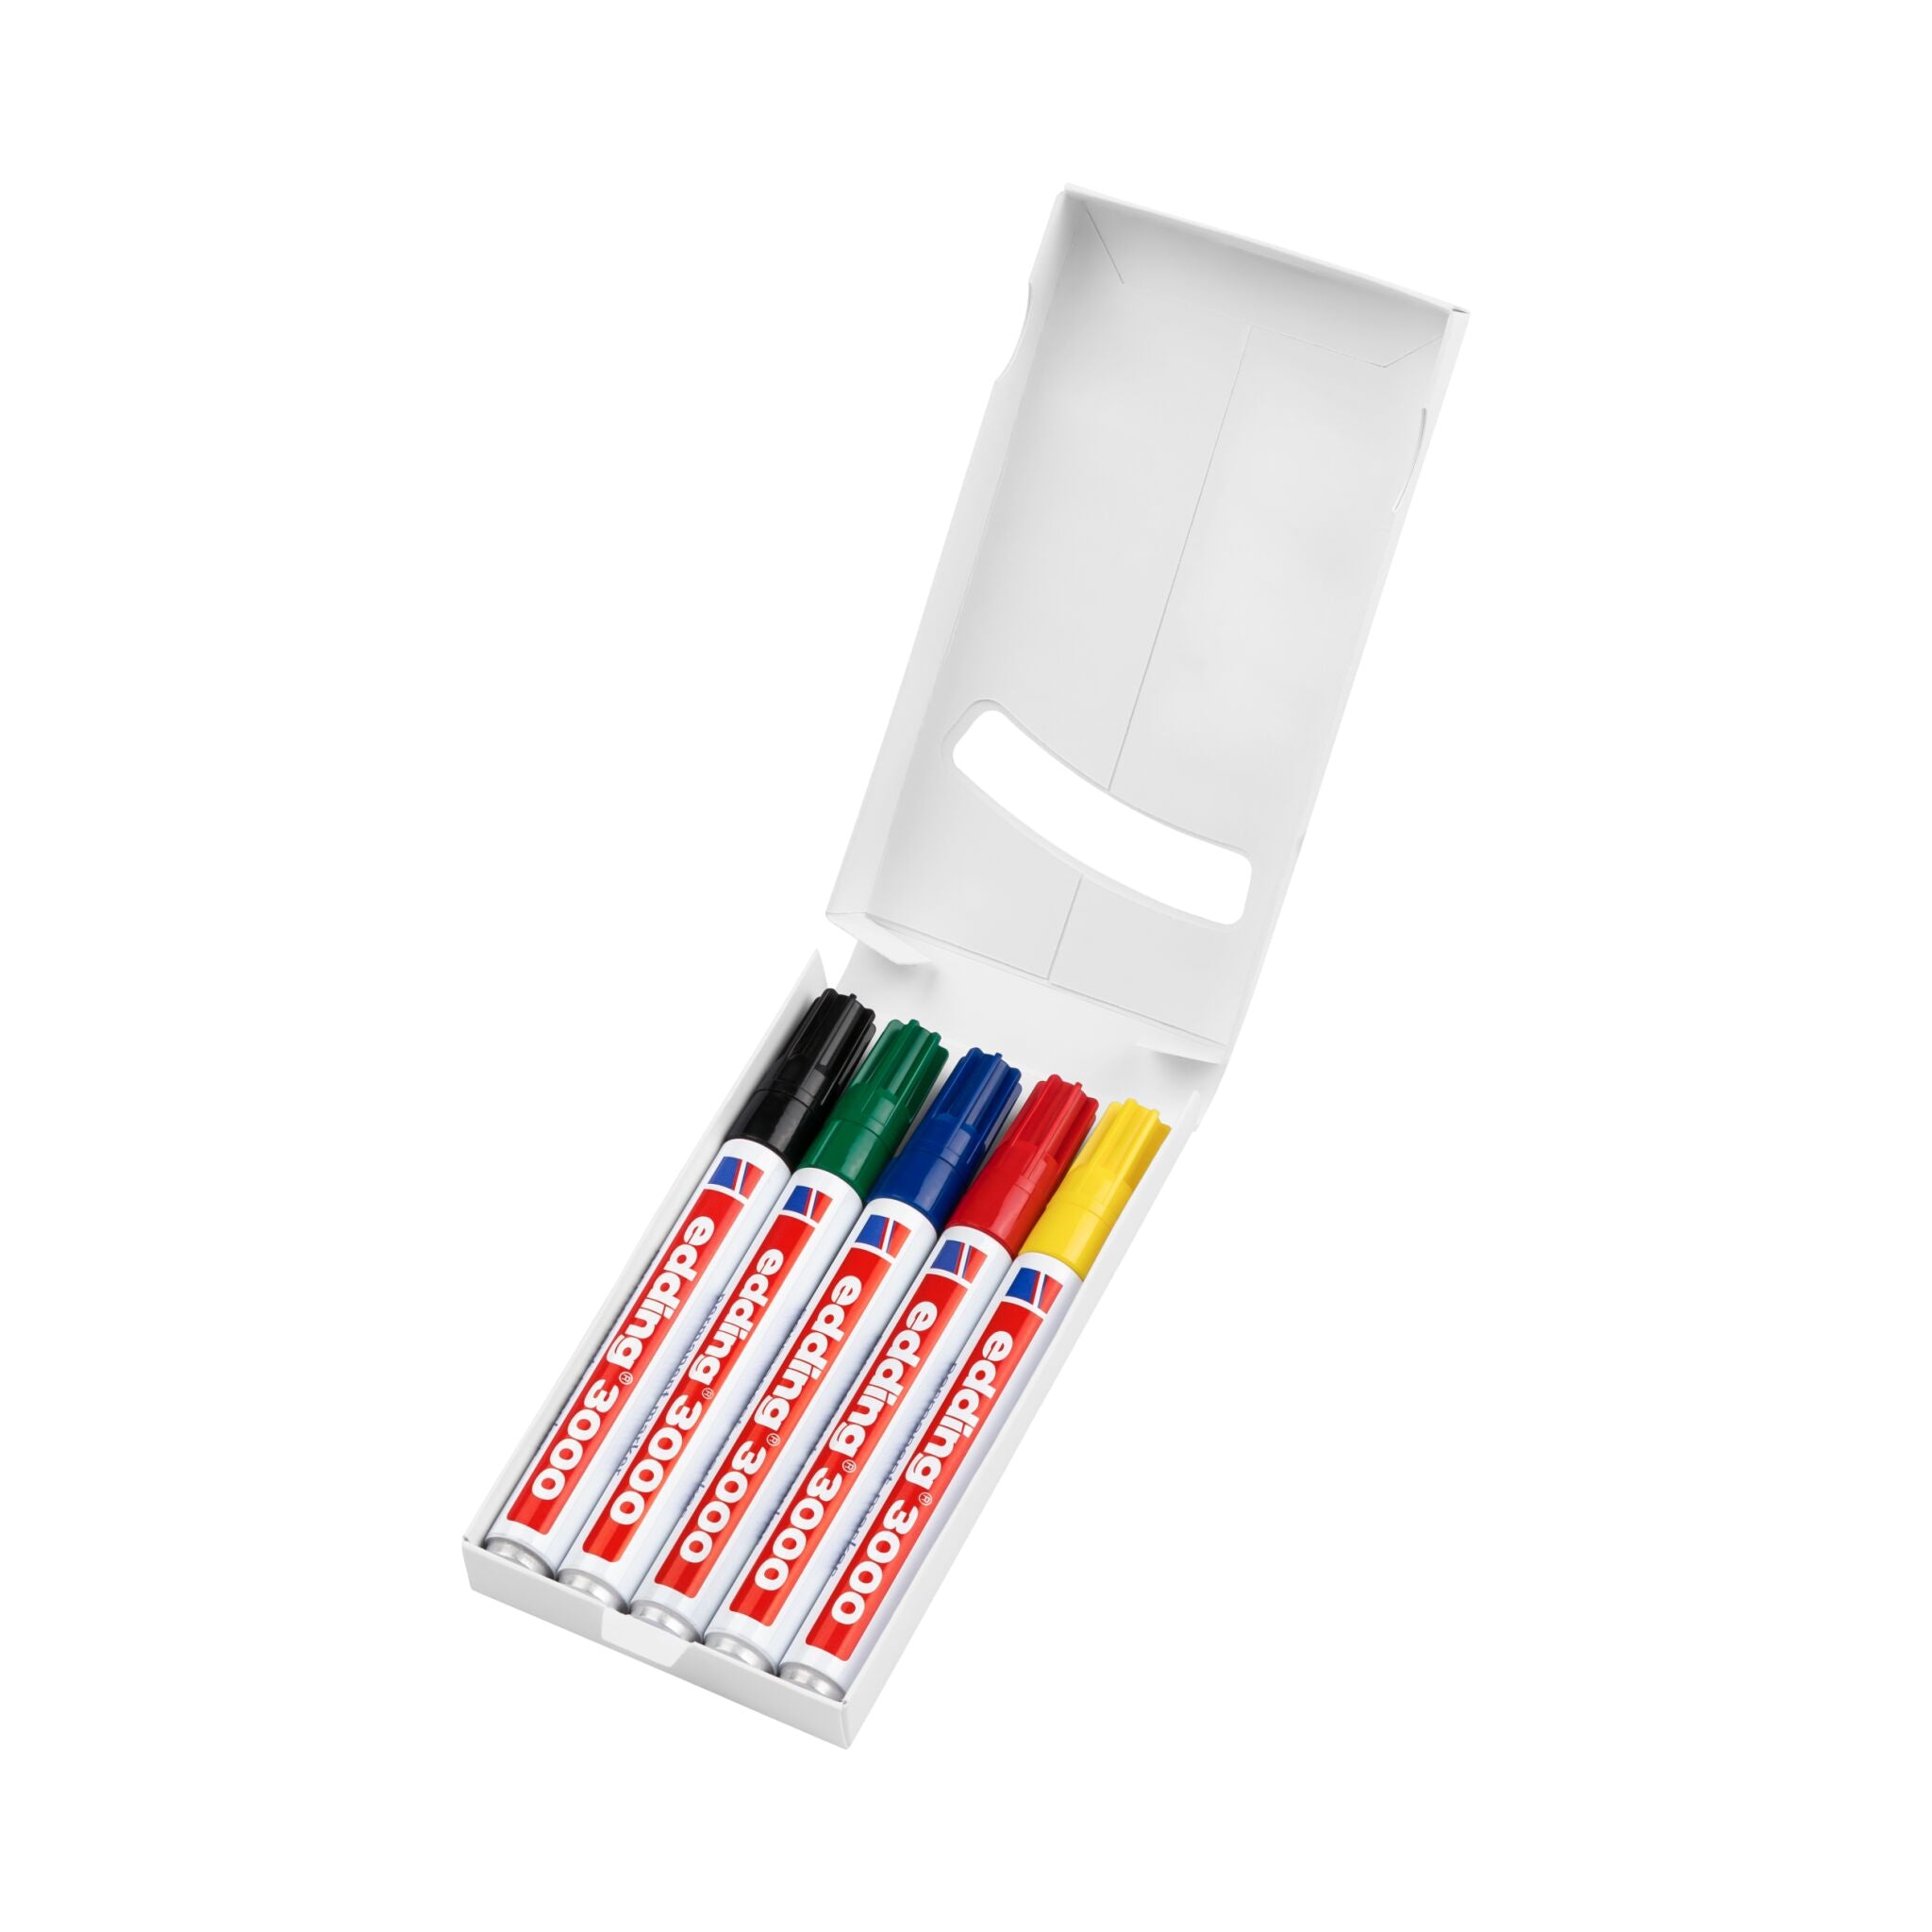 Eine Schachtel mit dem farbenfrohen edding 3000 Permanentmarker 5er-Set, ordentlich angeordnet auf einem weißen Hintergrund.